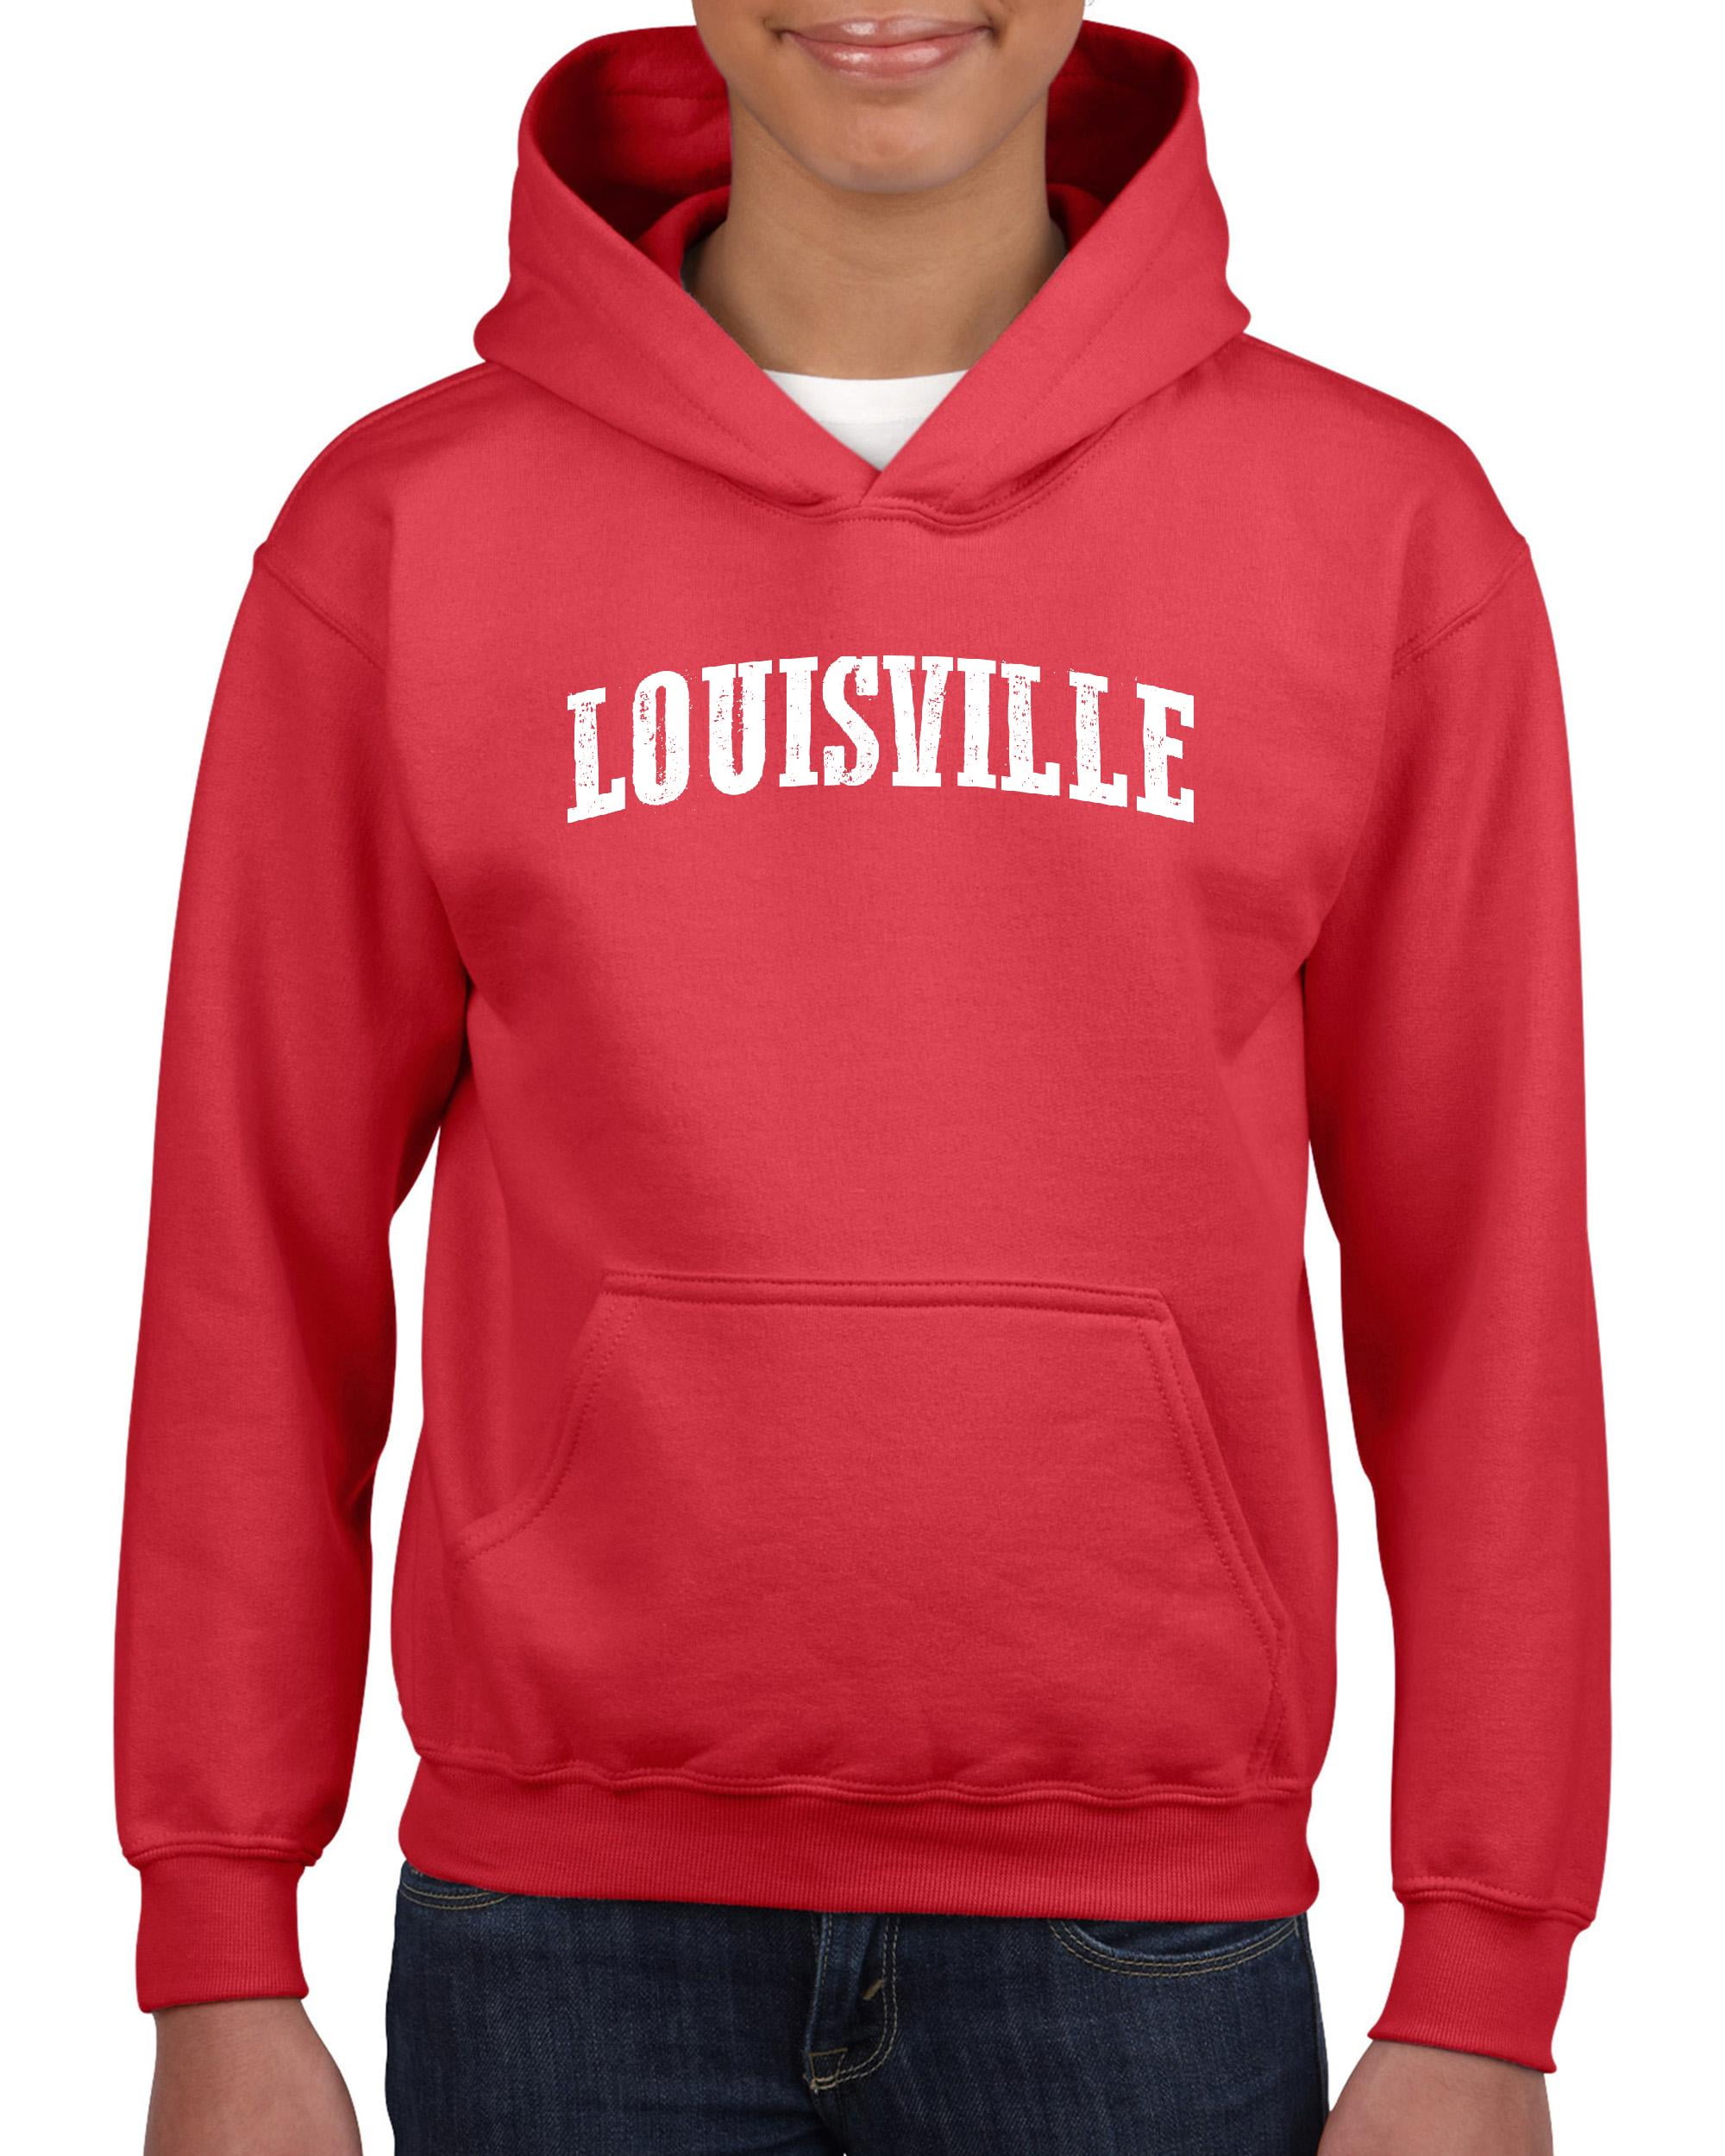 IWPF - Big Boys Hoodies and Sweatshirts - Louisville 